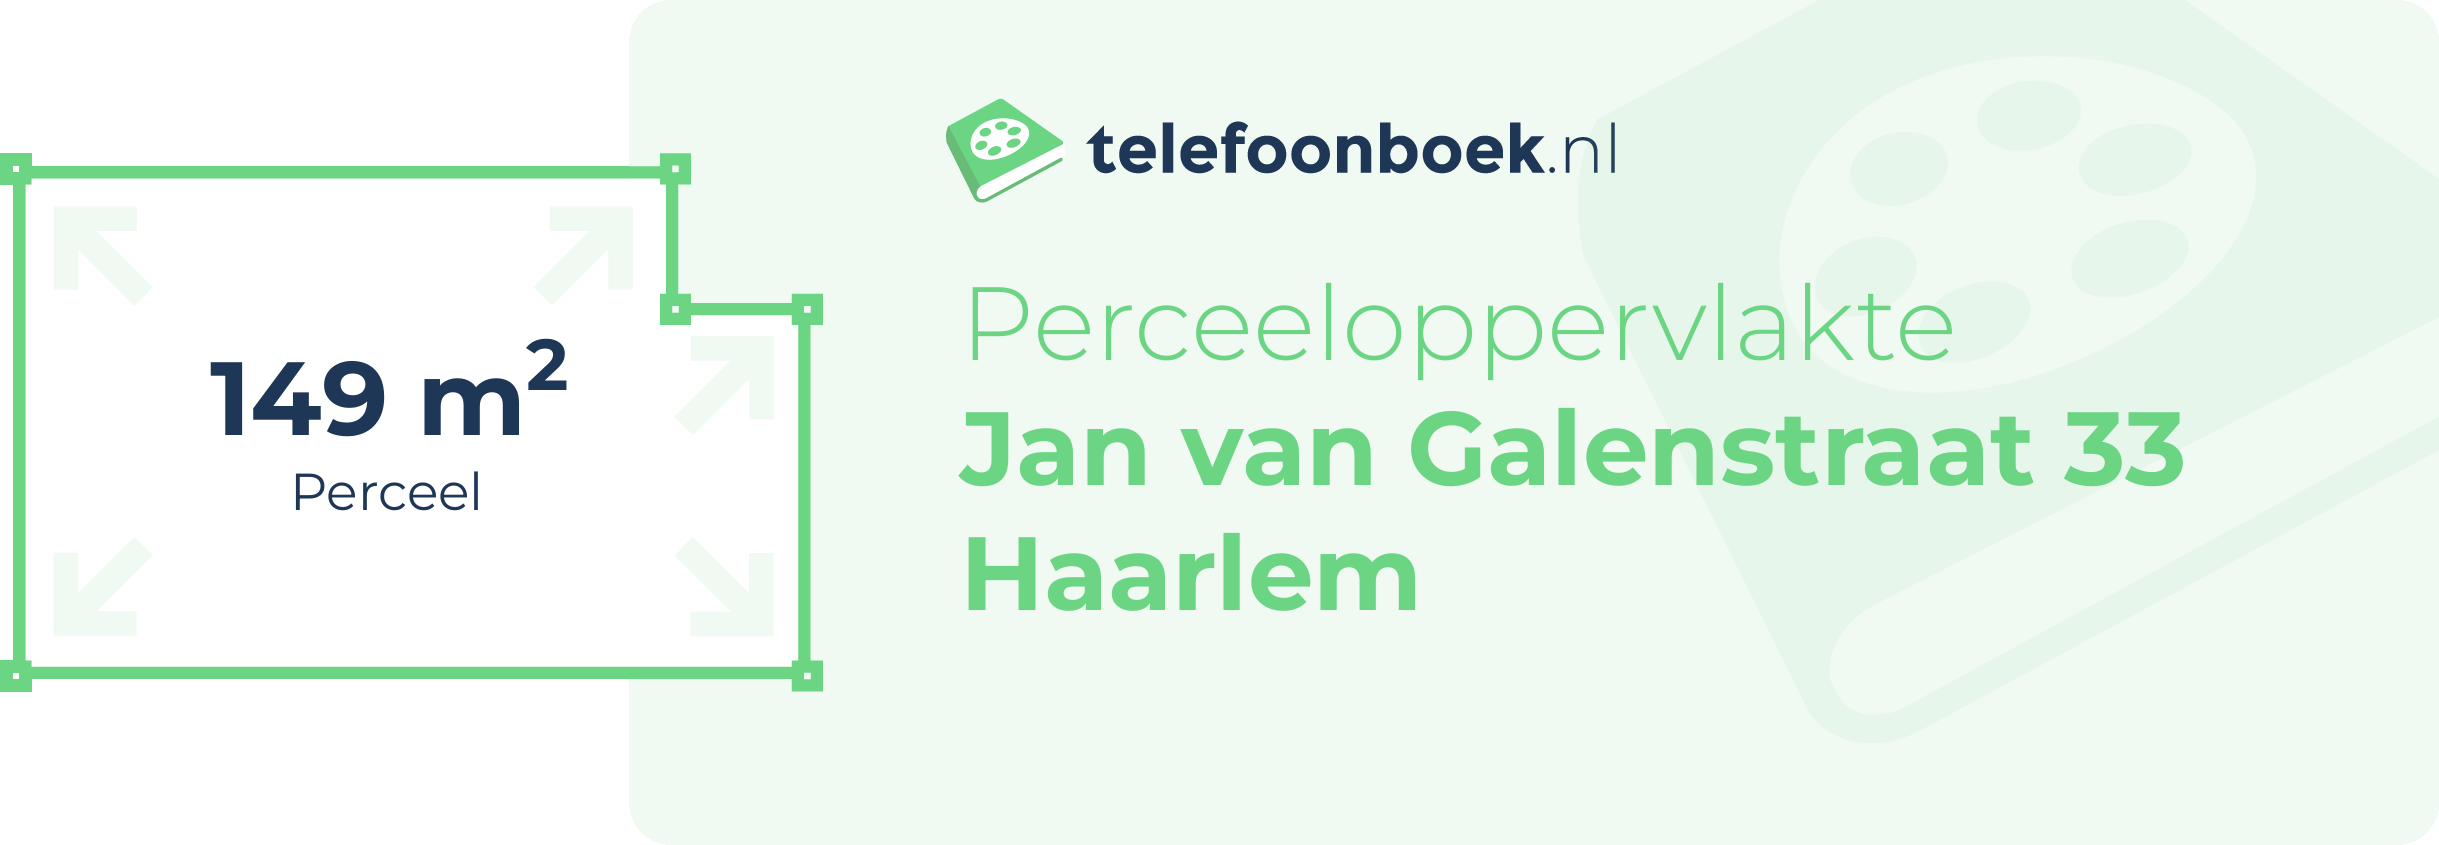 Perceeloppervlakte Jan Van Galenstraat 33 Haarlem